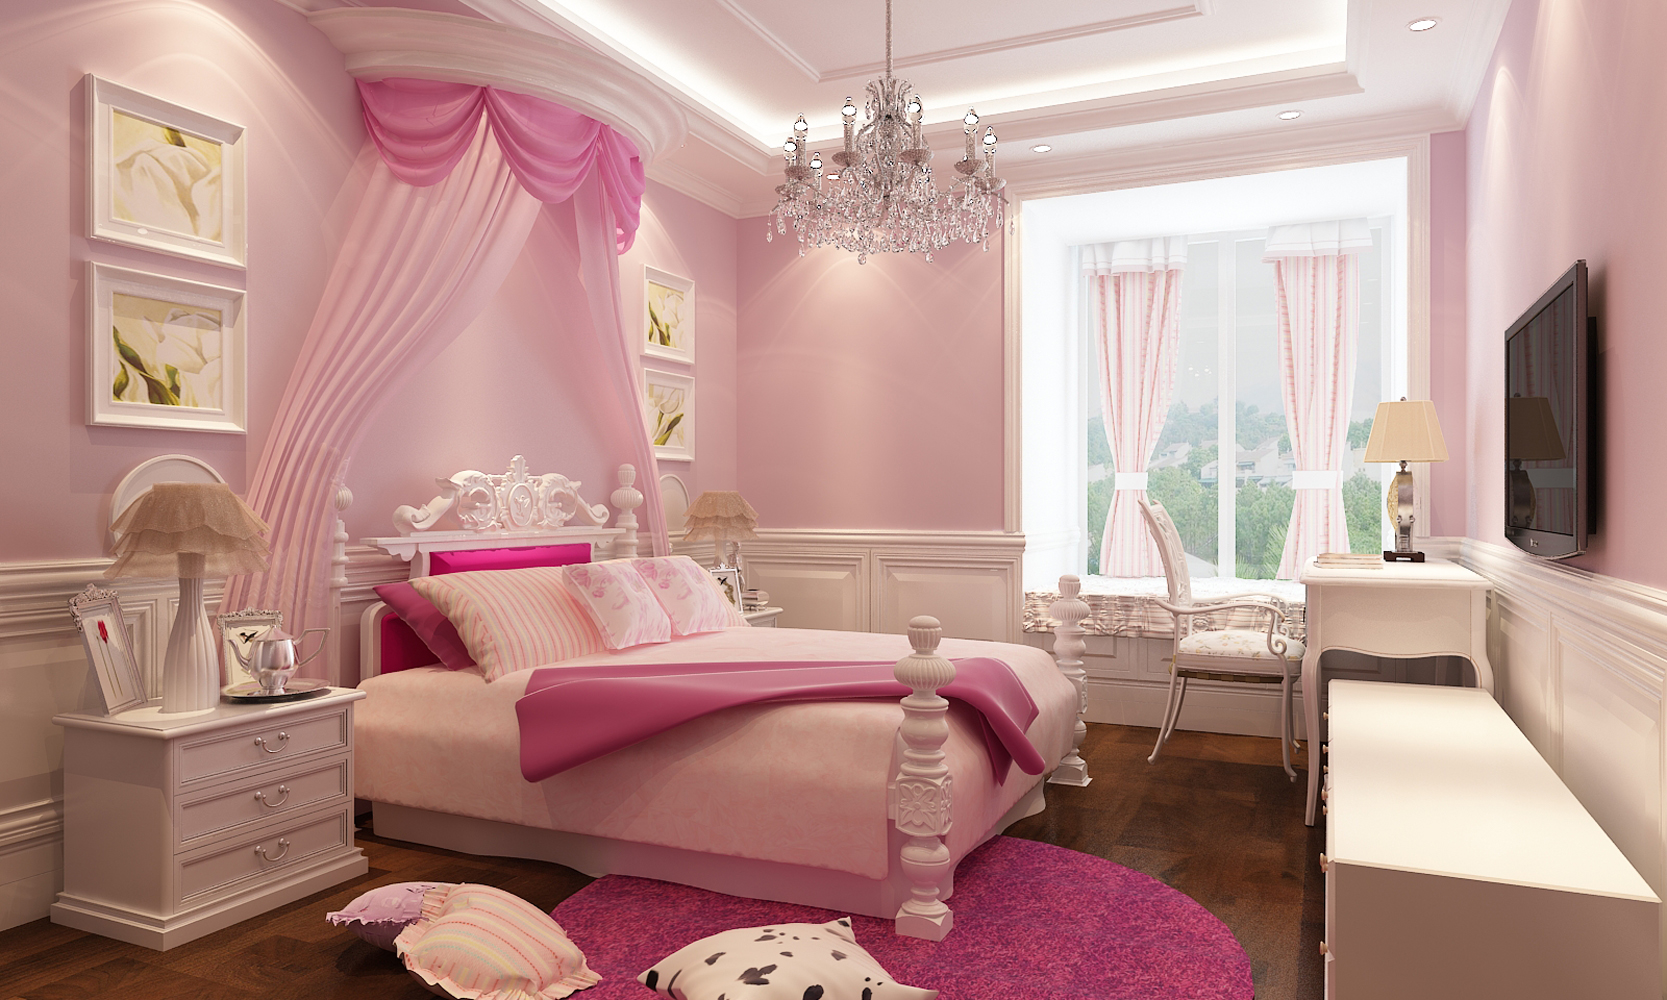 儿童房的设计以粉色为主调,给小公主的卧室增添几分梦幻的色彩